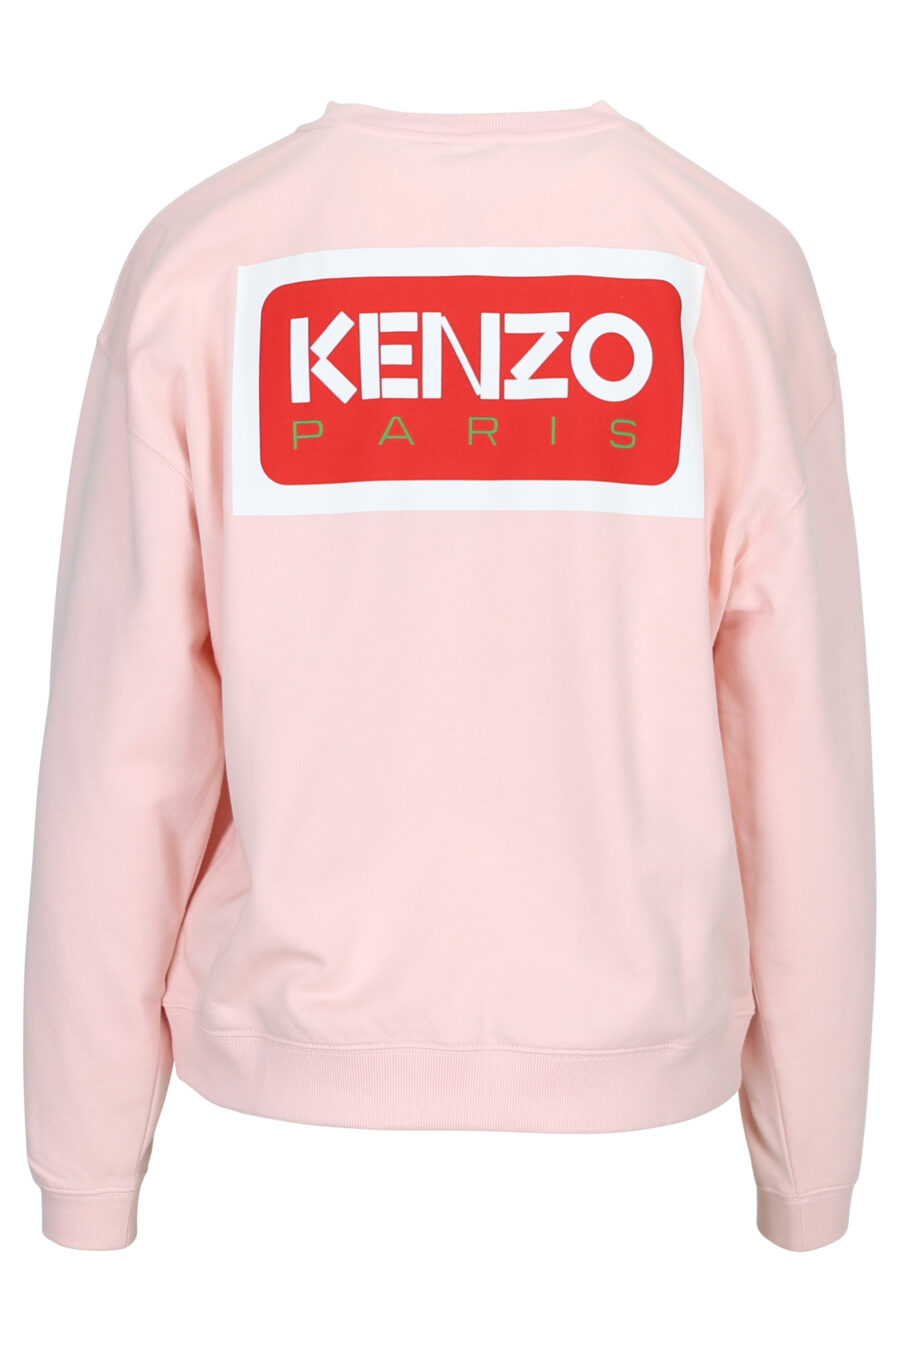 Sudadera rosa con maxilogo "kenzo paris" en espalda - 3612230515574 1